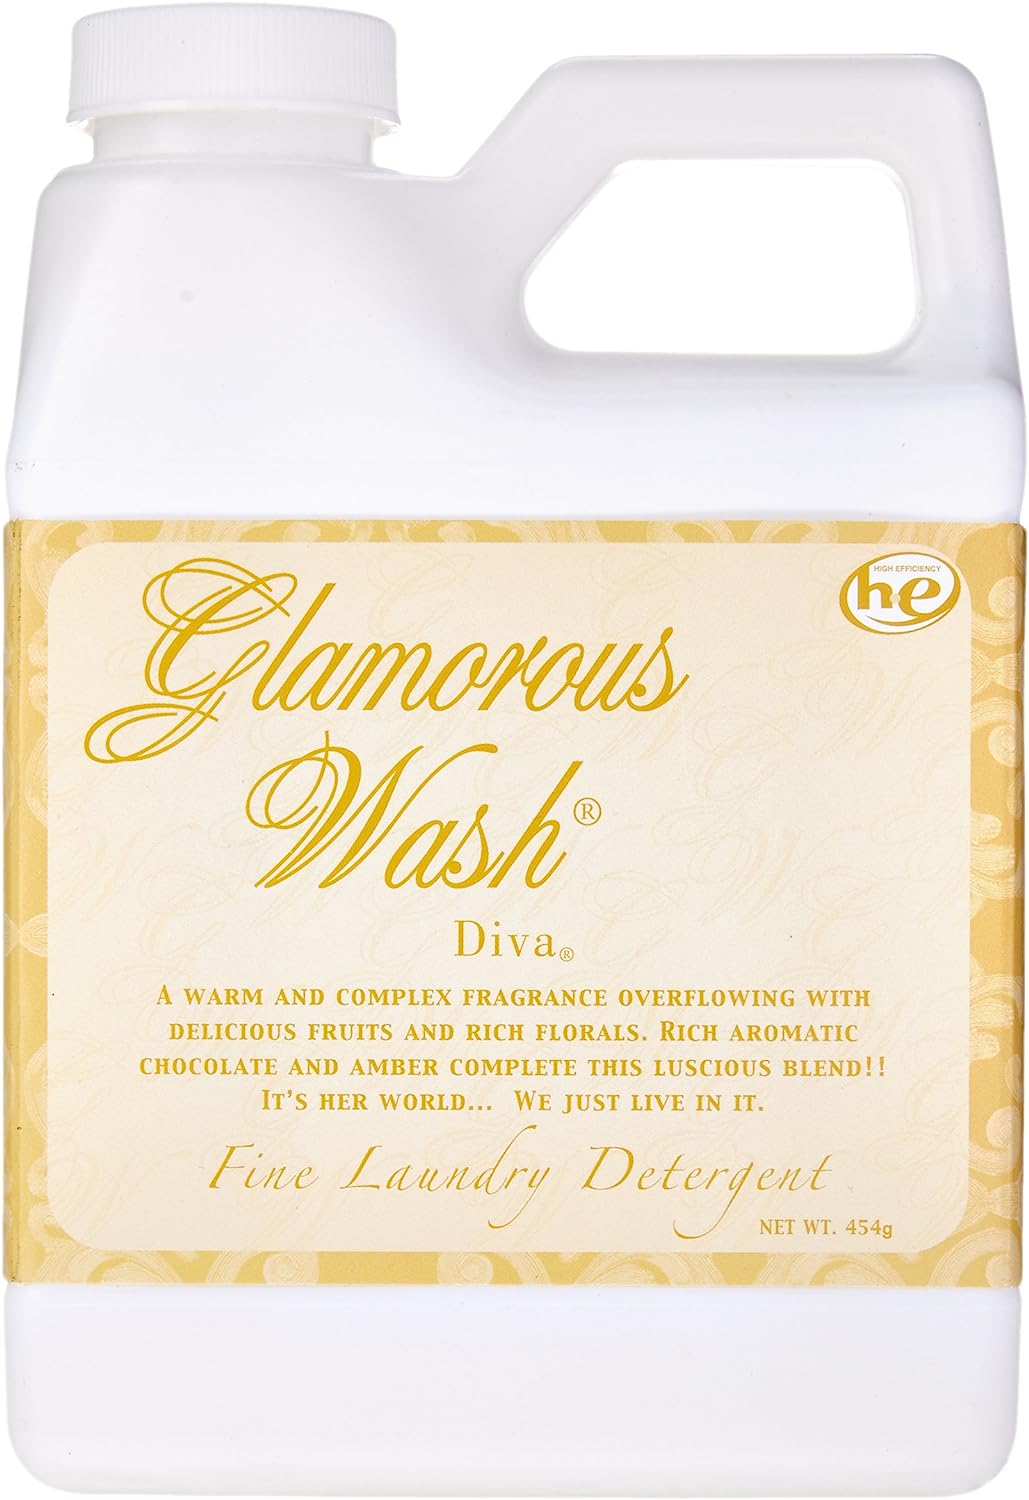 Tyler Glamorous Wash Fine Laundry Detergent 16 oz